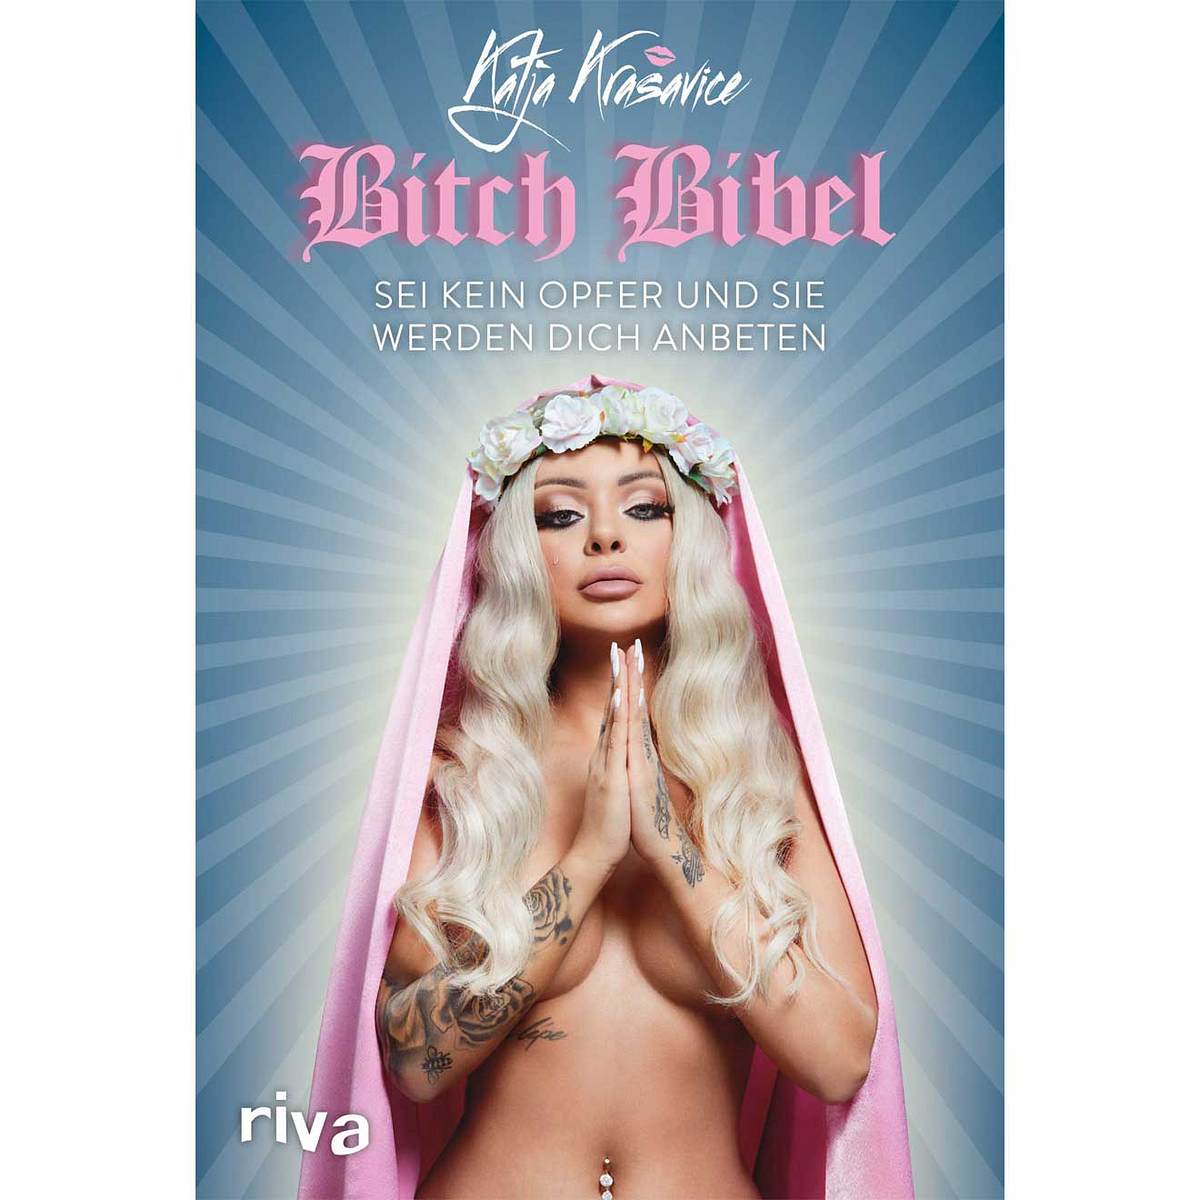 Skandalös wie Madonna, zeigt sich Katja auf dem Buchcover der Bitch Bibel